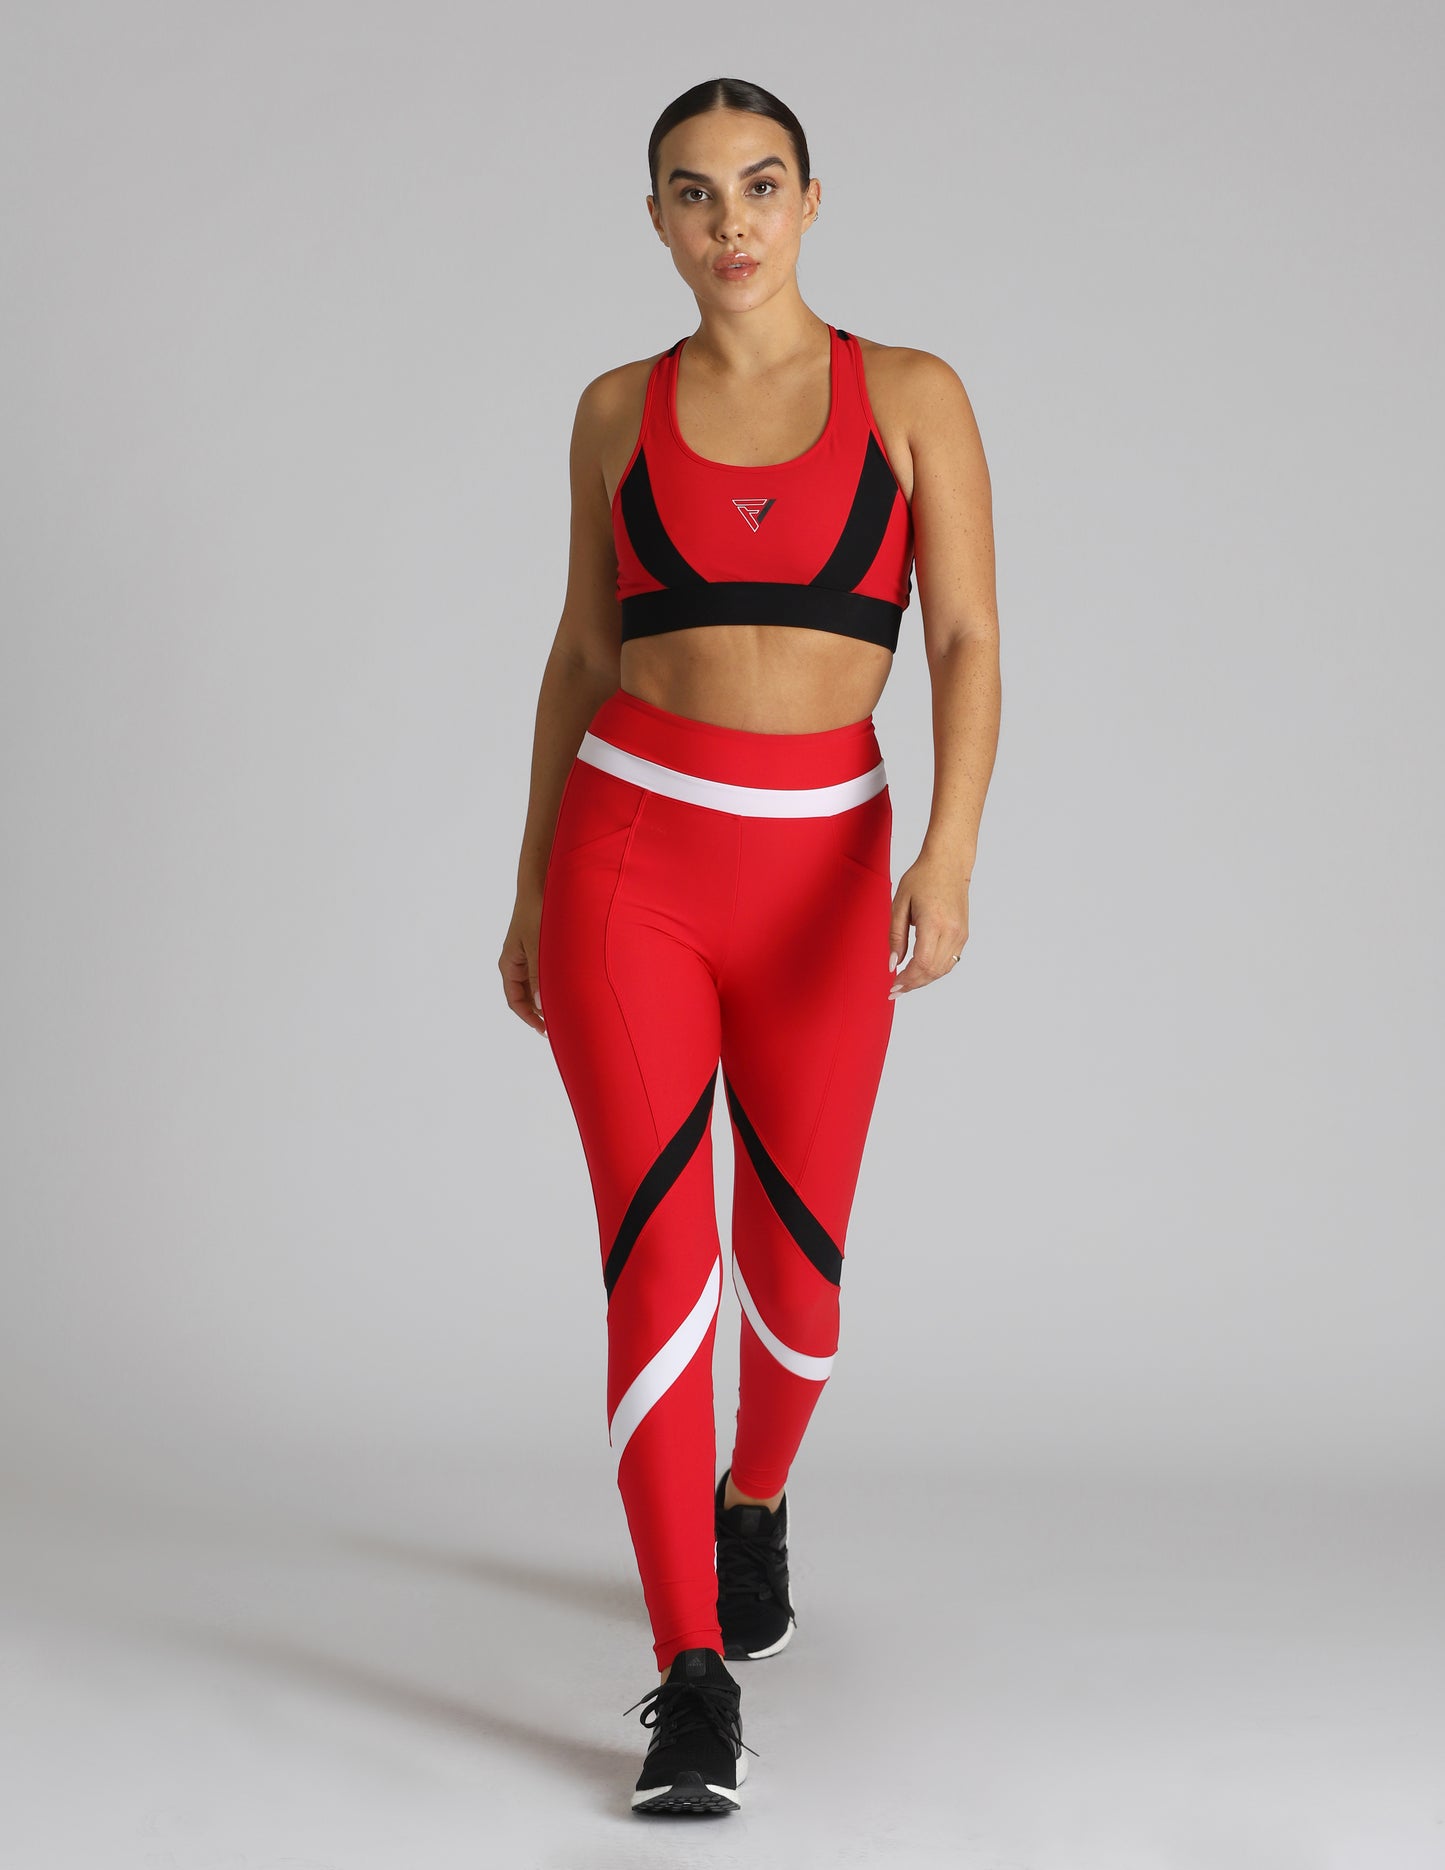 Sport Bra – My Hera Sportswear